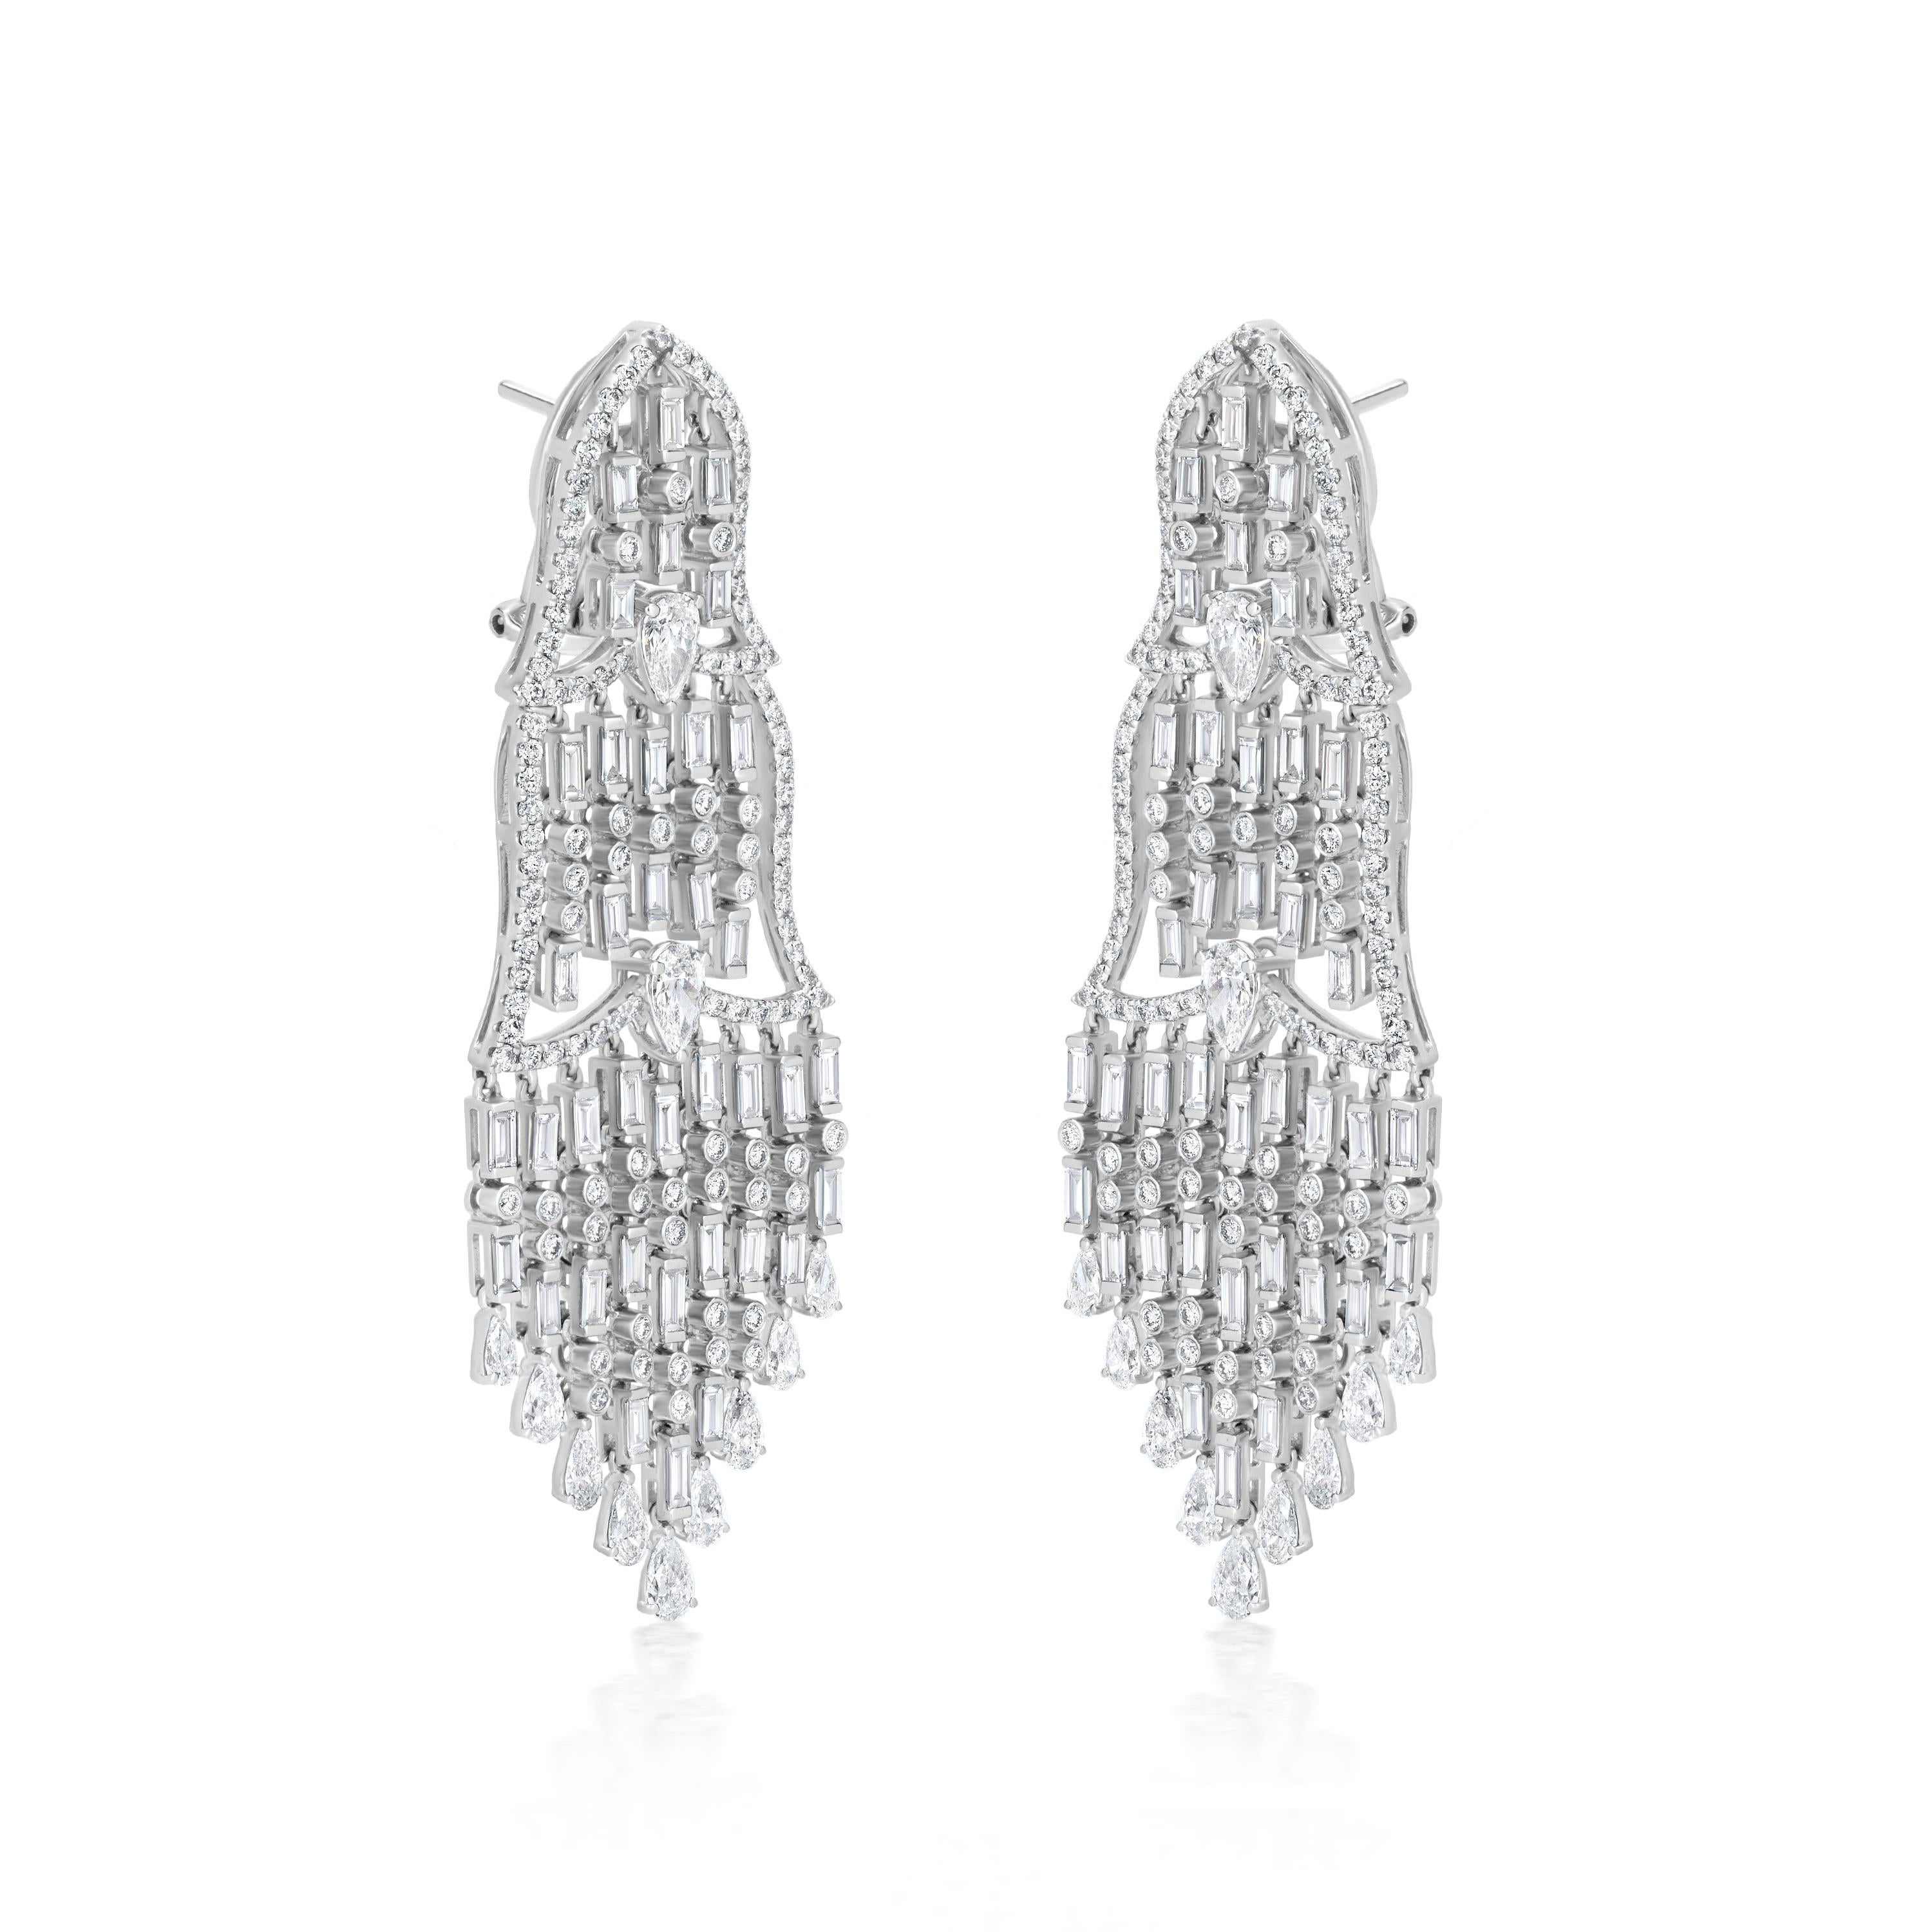 Unser Nigaam 8.13 Cttw. Diamant-Kronleuchter-Ohrringe sind der Inbegriff von Luxus und Eleganz. Diese Ohrringe sind aus feinstem 18-karätigem Weißgold gefertigt und zeichnen sich durch ein doppeltes Diamantkronendesign auf der Oberseite aus, wobei